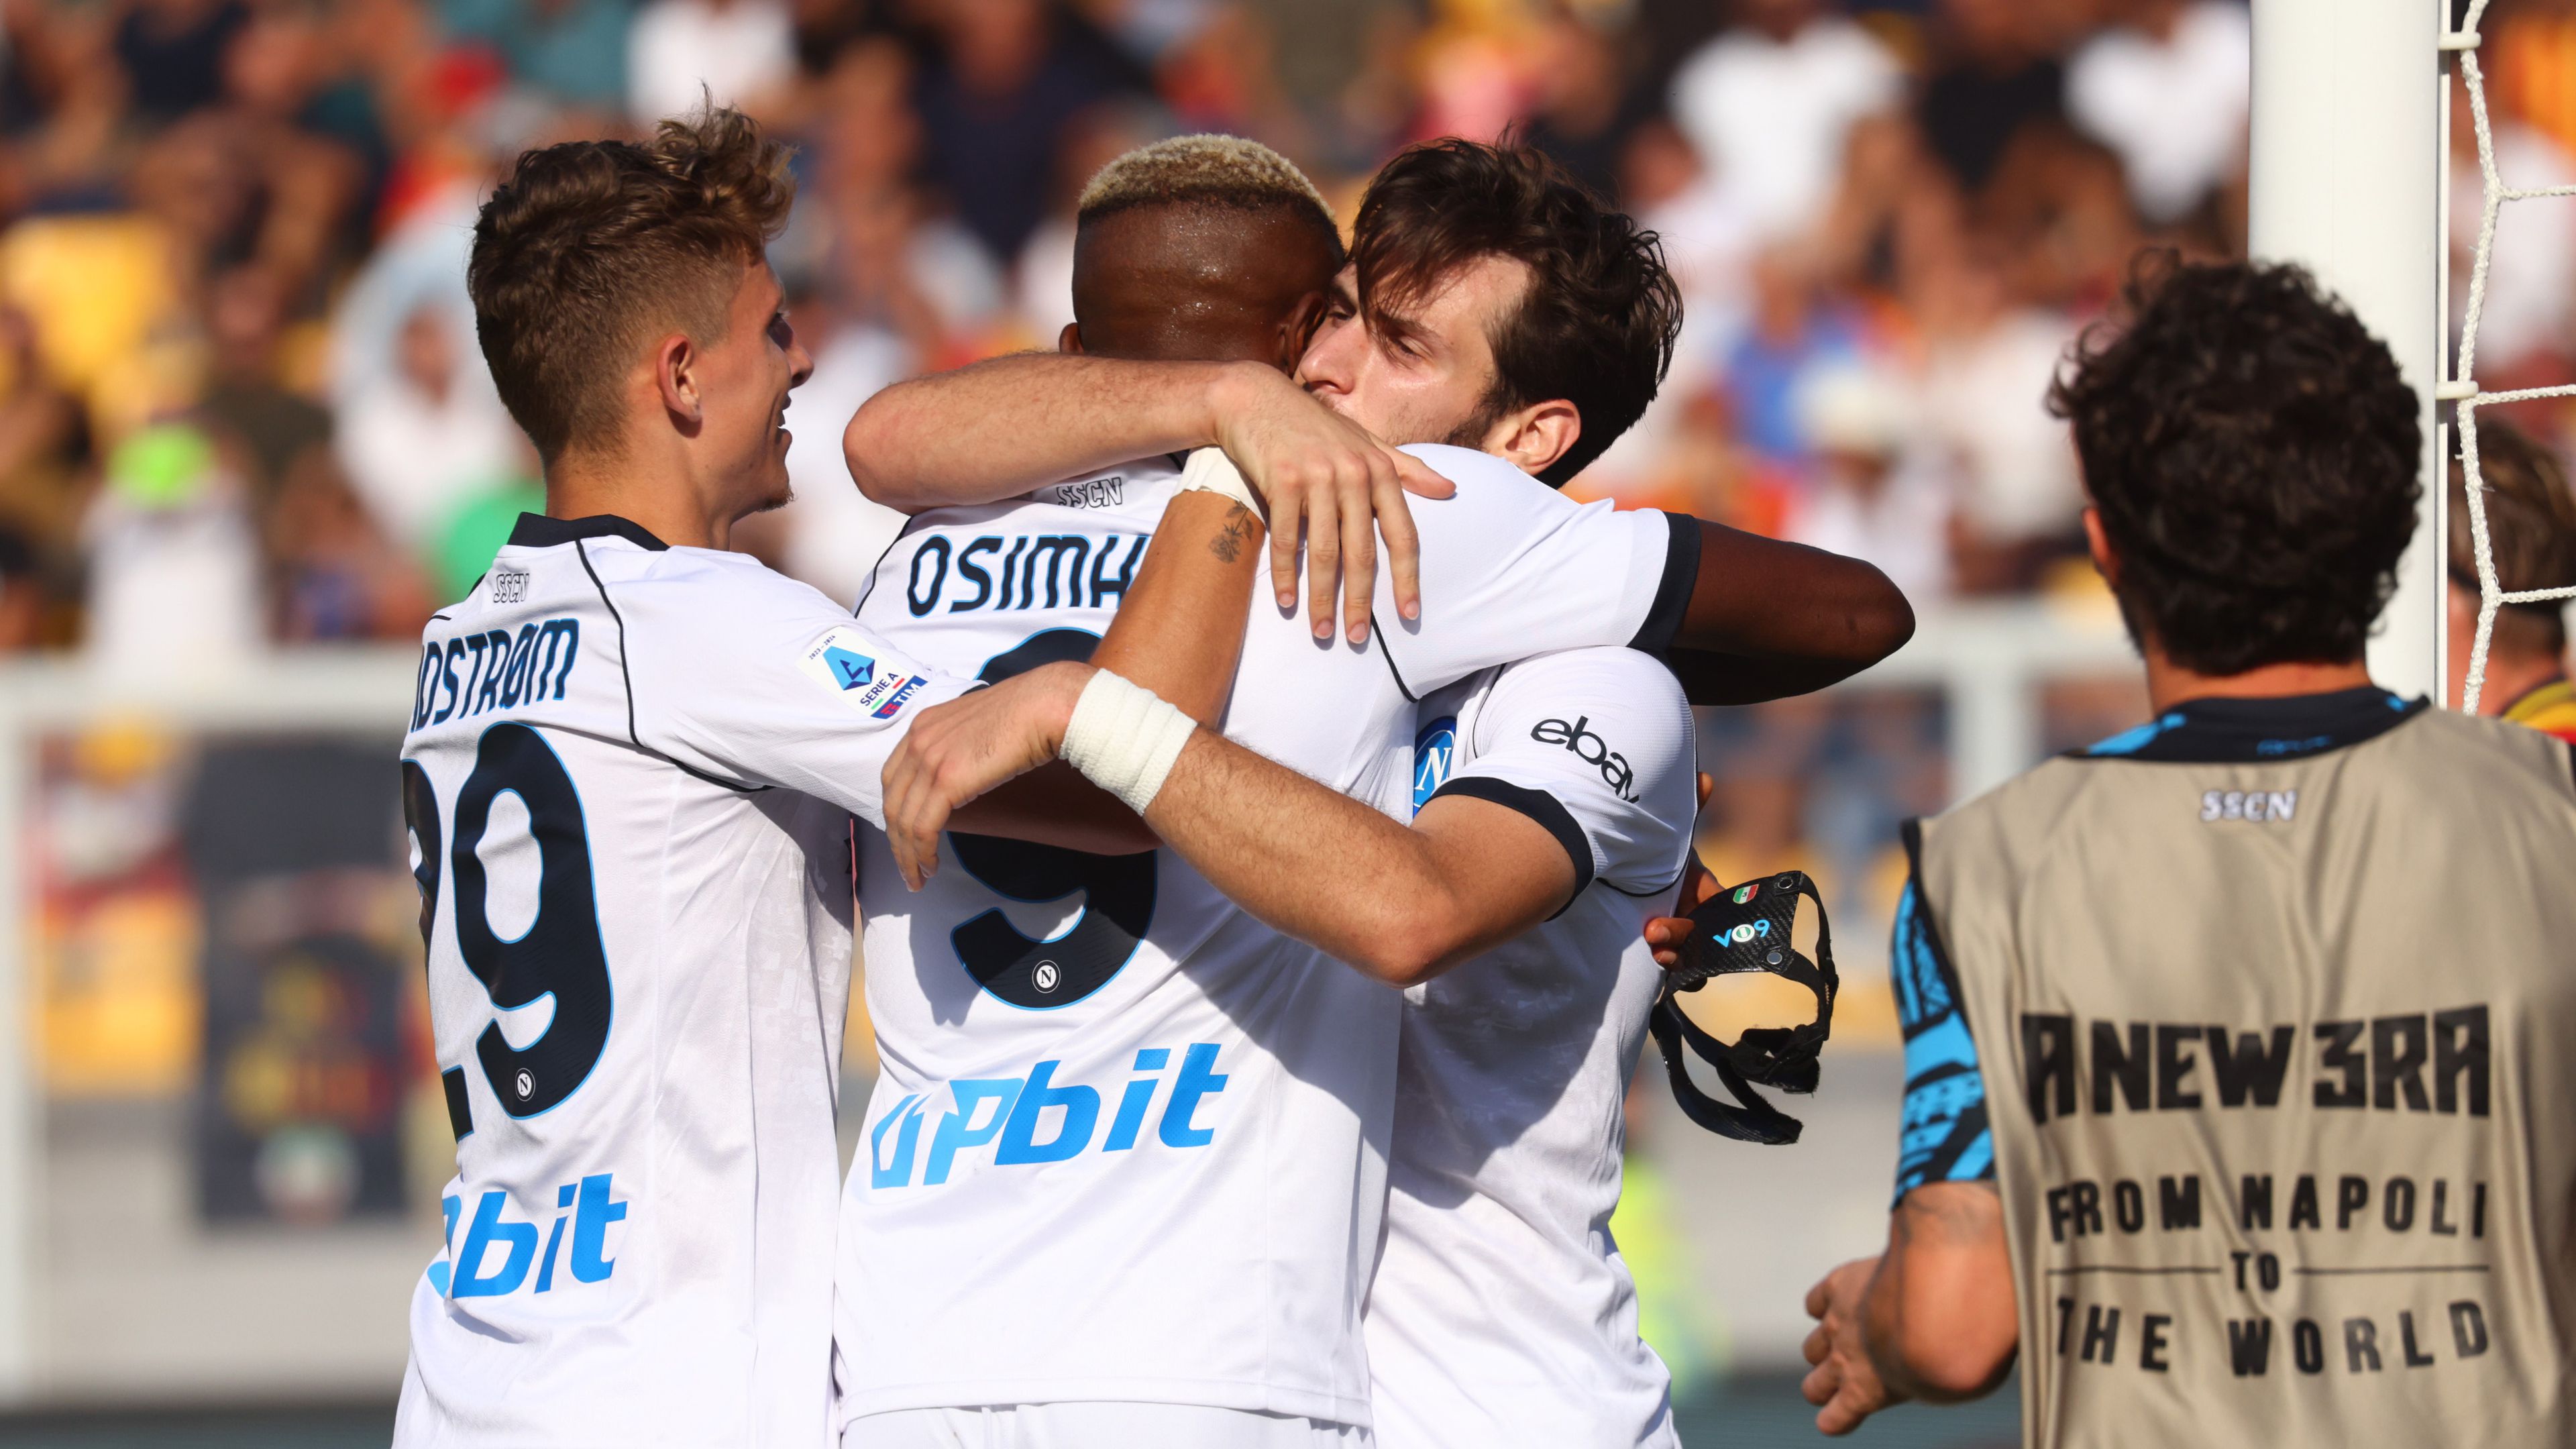 A címvédő Napoli simán legyőzte a szezon meglepetéscsapatát